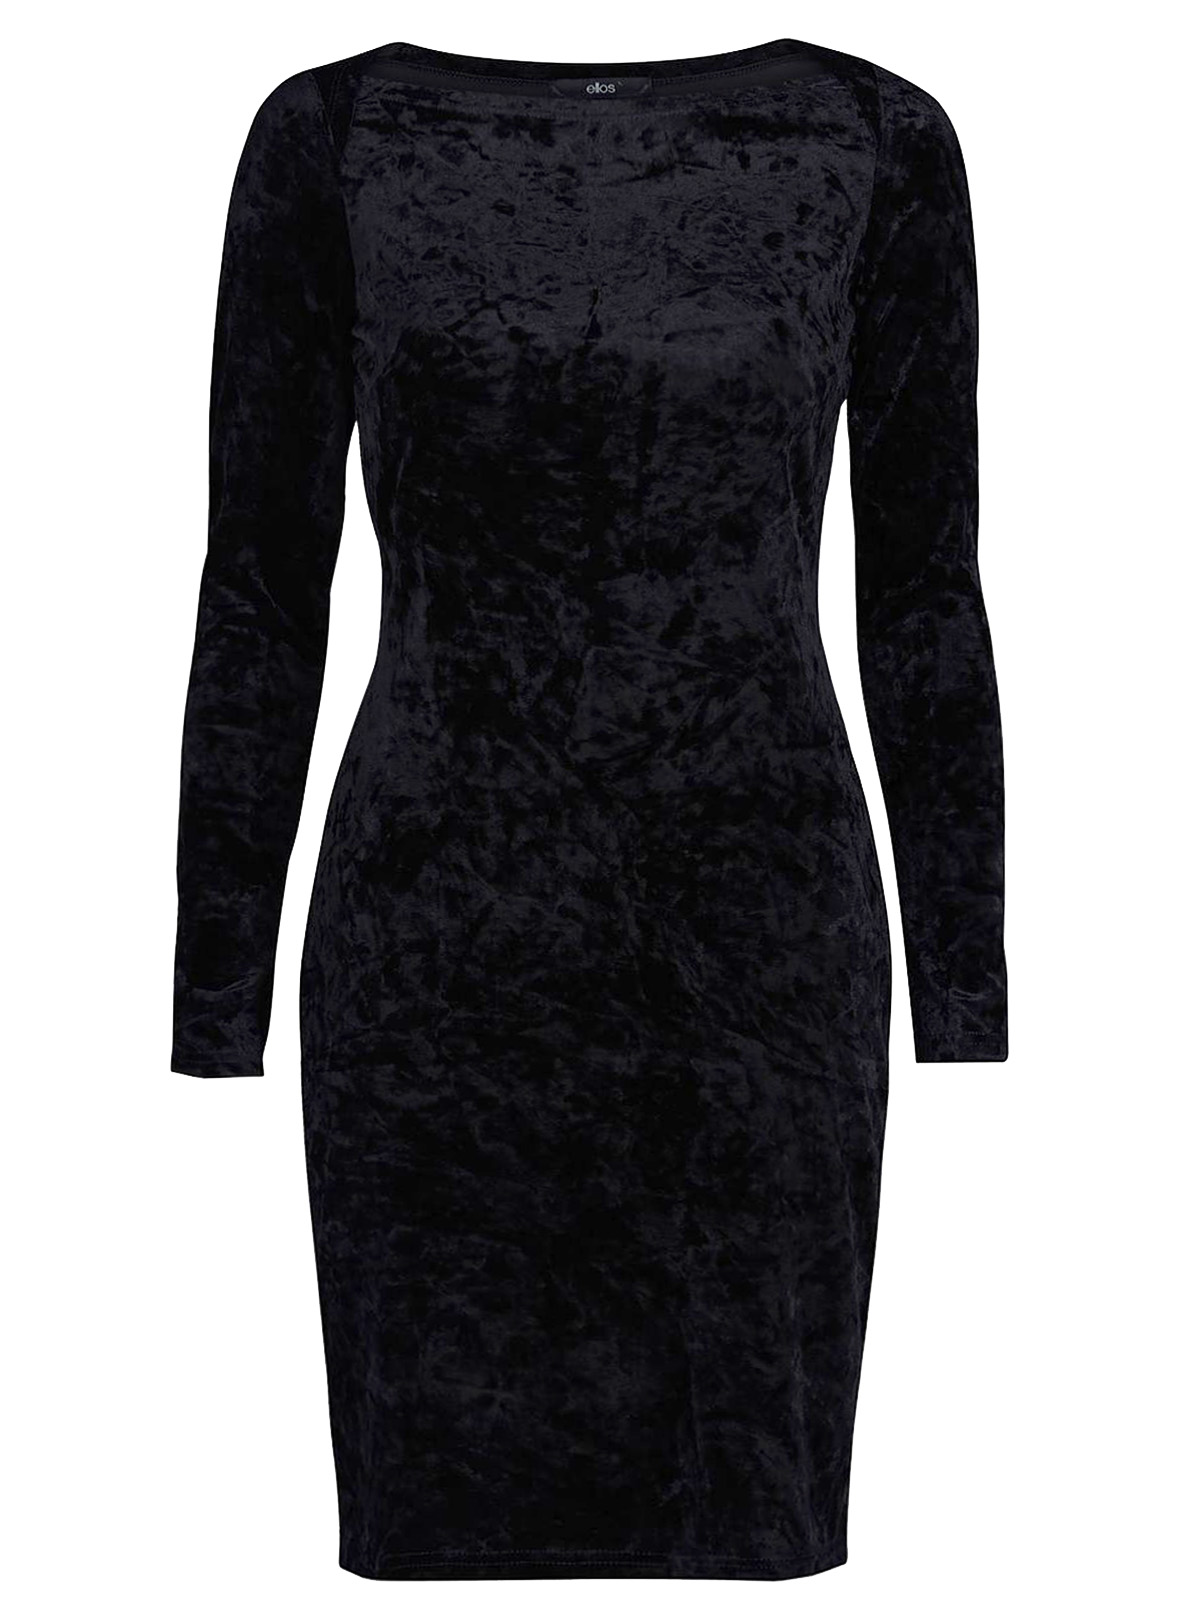 Ellos - - Ellos BLACK Sally Long Sleeve Velour Dress - Size 20 (EU 46)